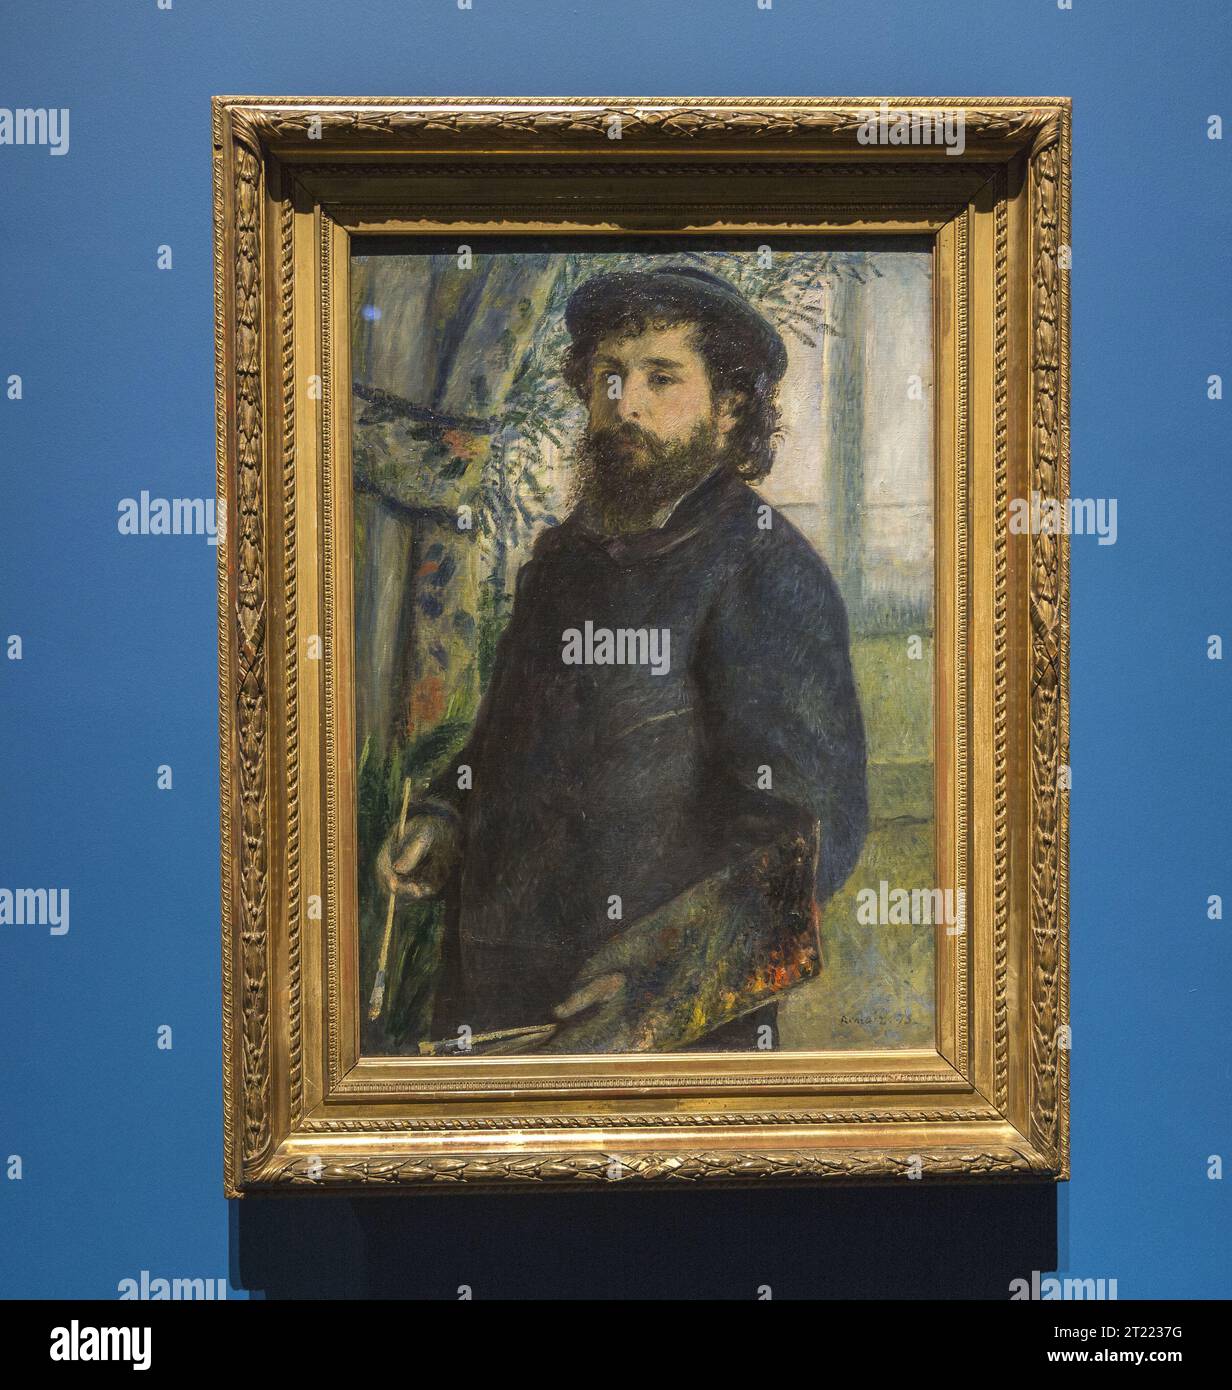 Portrait of Claude Monet by Renoir Stock Photo